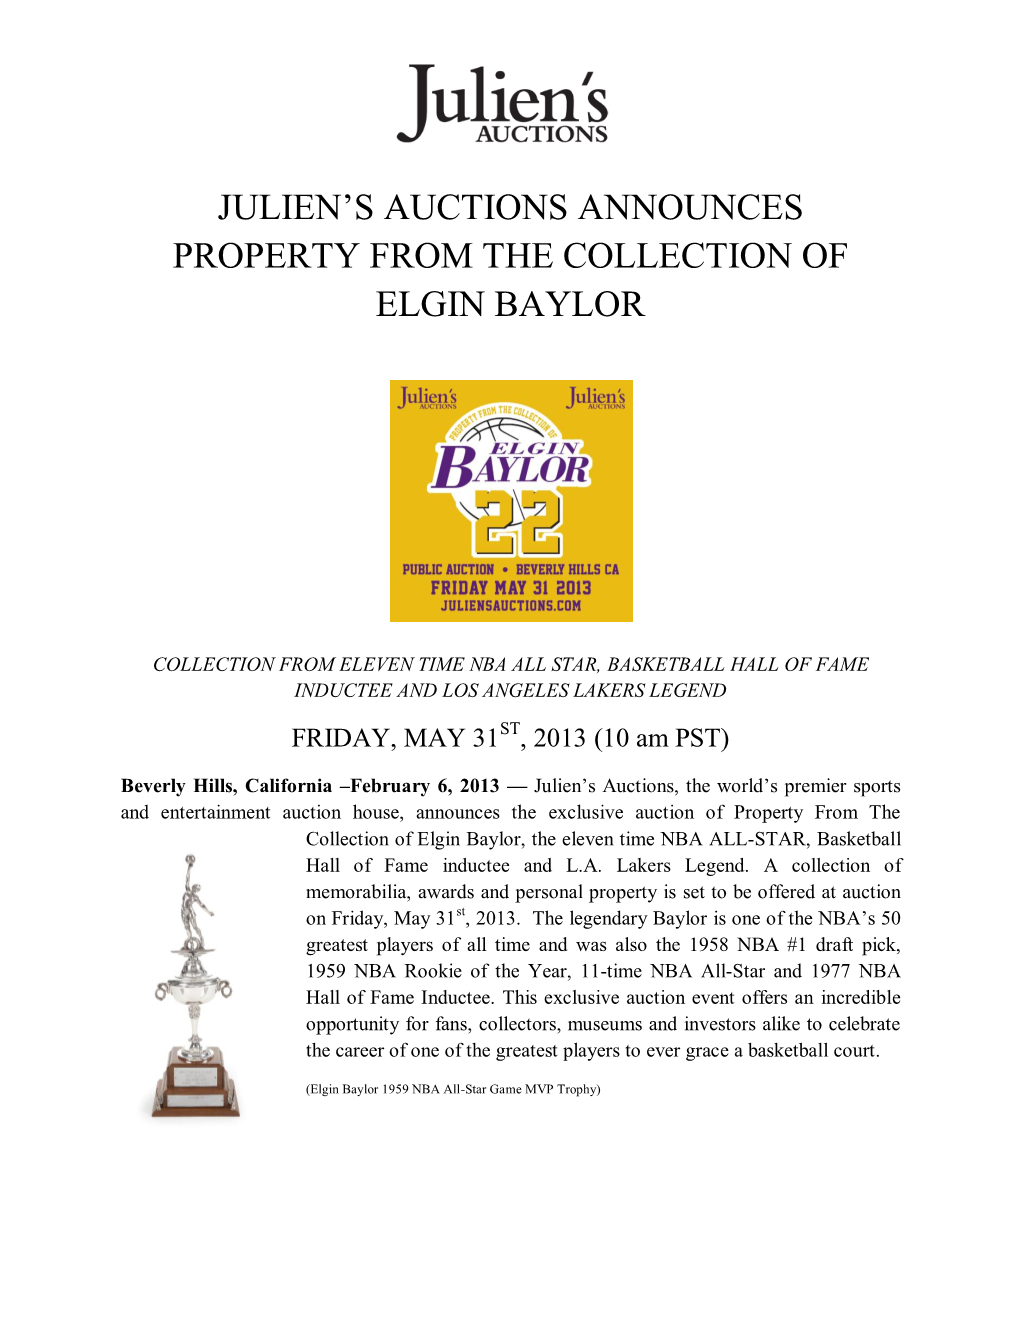 Elgin Baylor Press Release